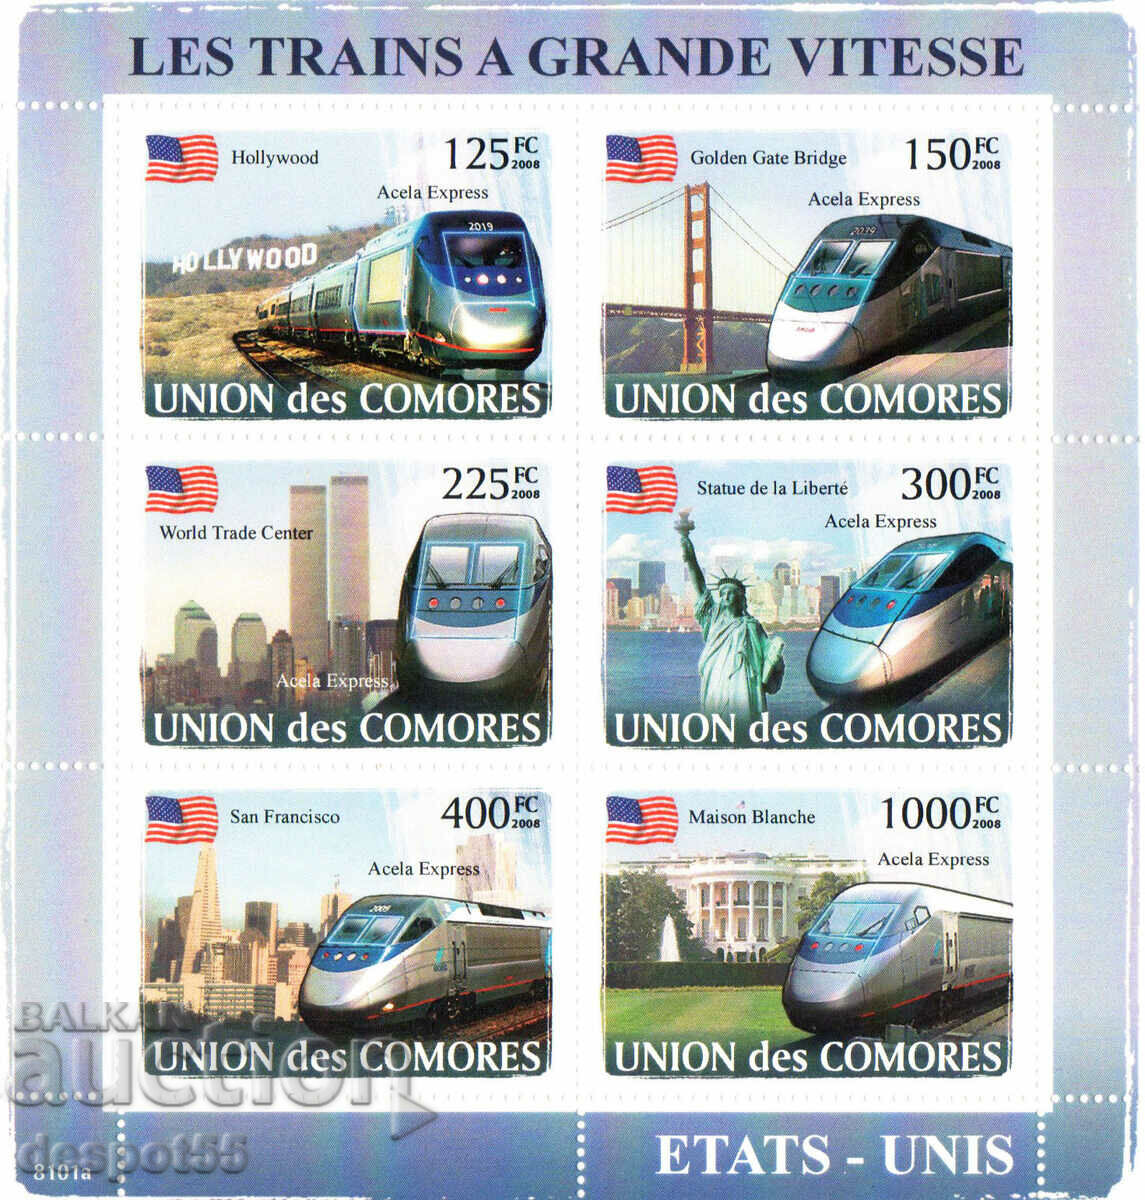 2008 Insulele Comore. Transport - trenuri expres din toată lumea